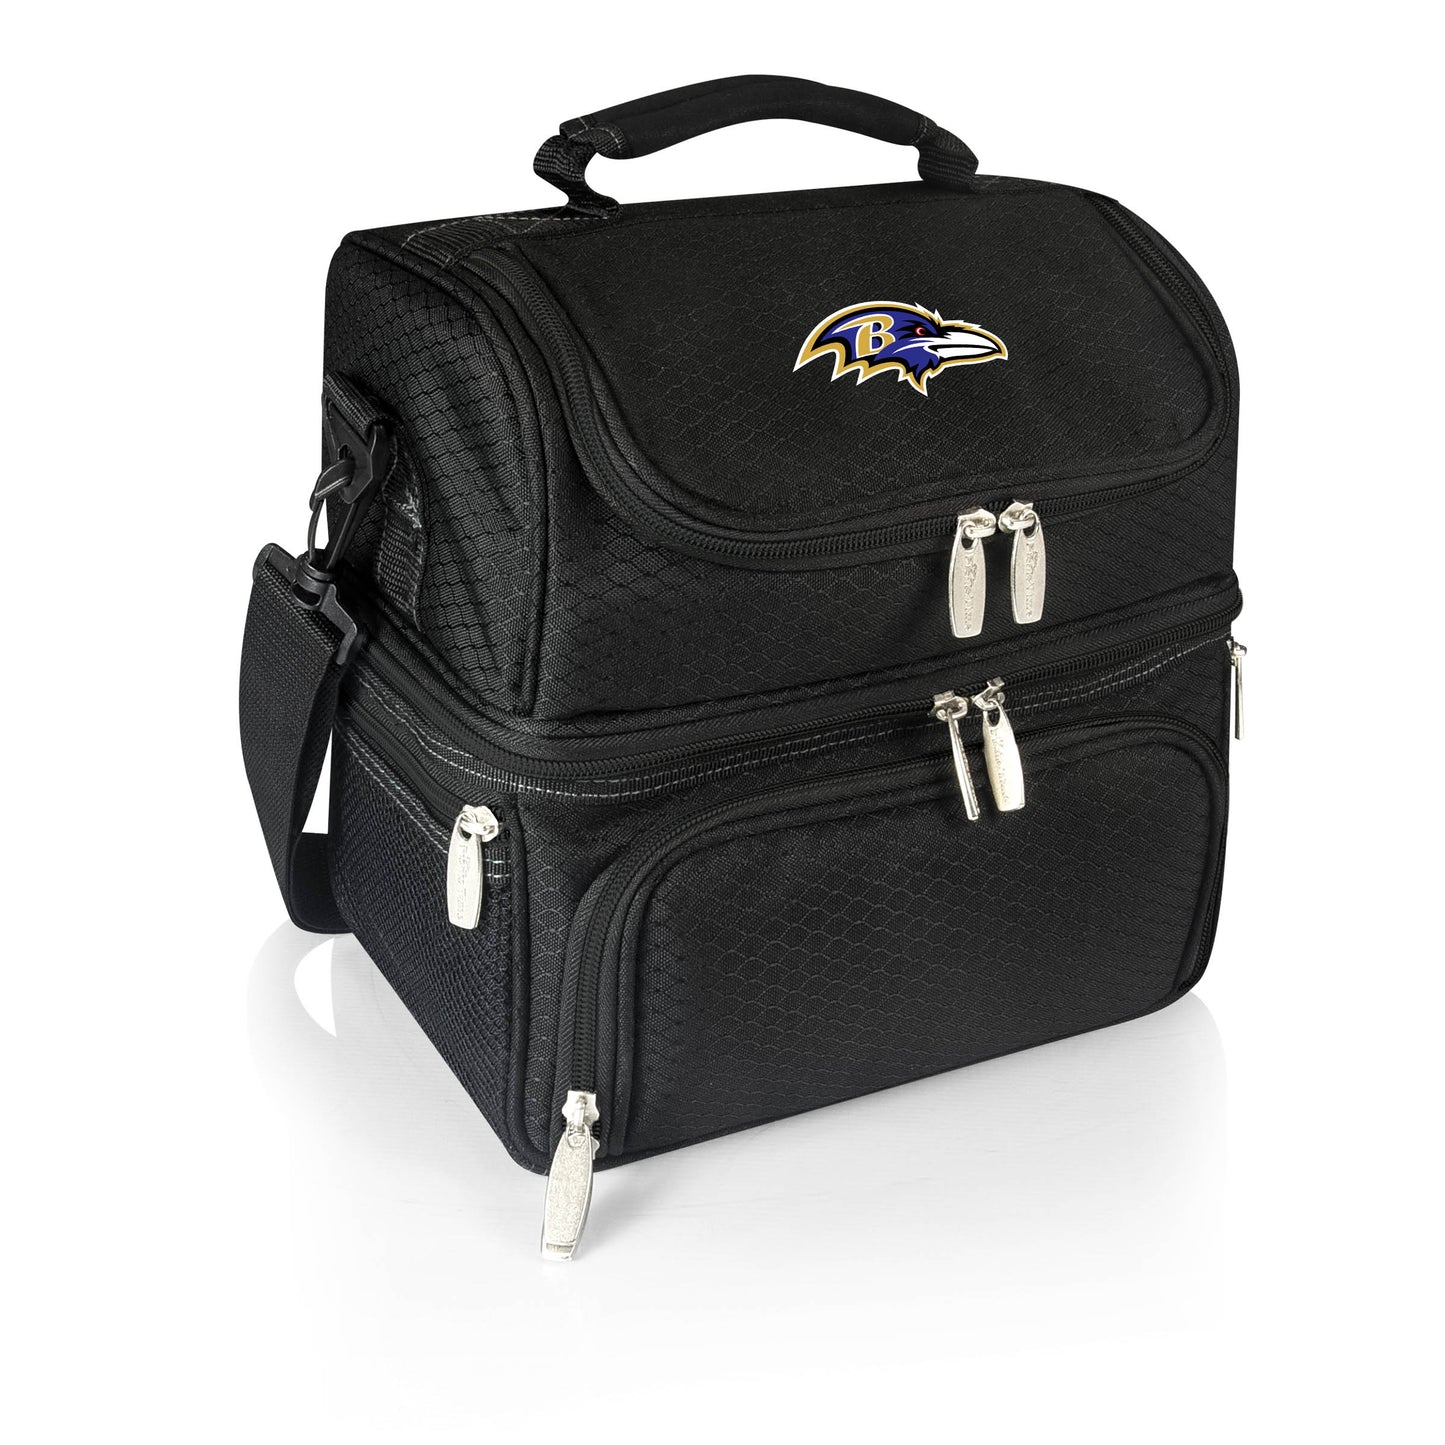 Baltimore Ravens - Pranzo Lunch Cooler Bag